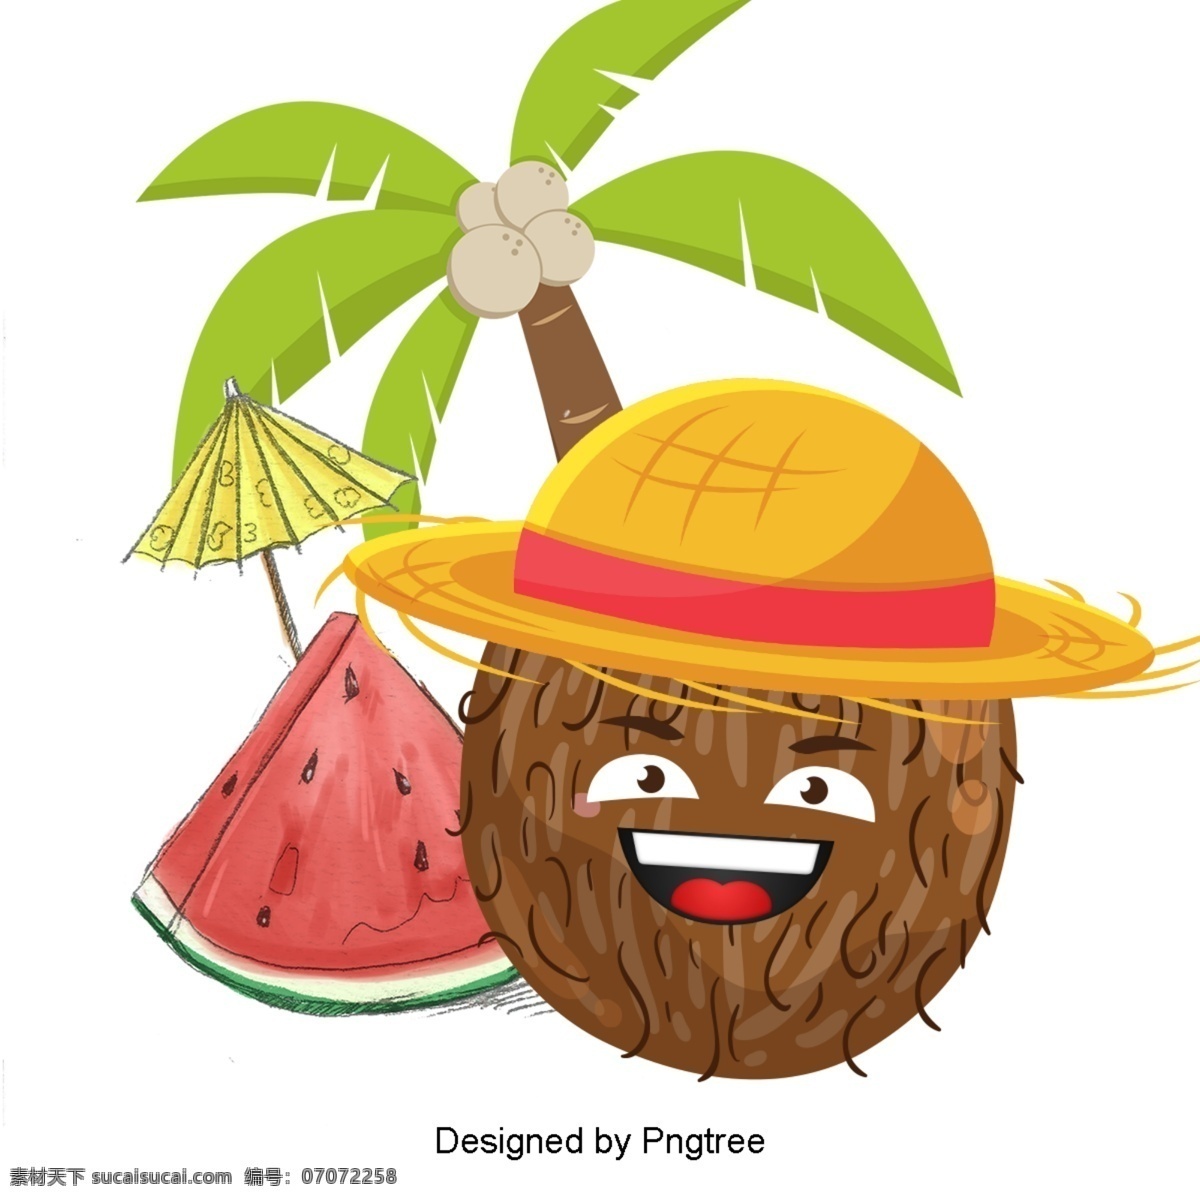 卡通 手绘 椰子 图案 简单 水果 夏季 抽象 艺术设计 图形